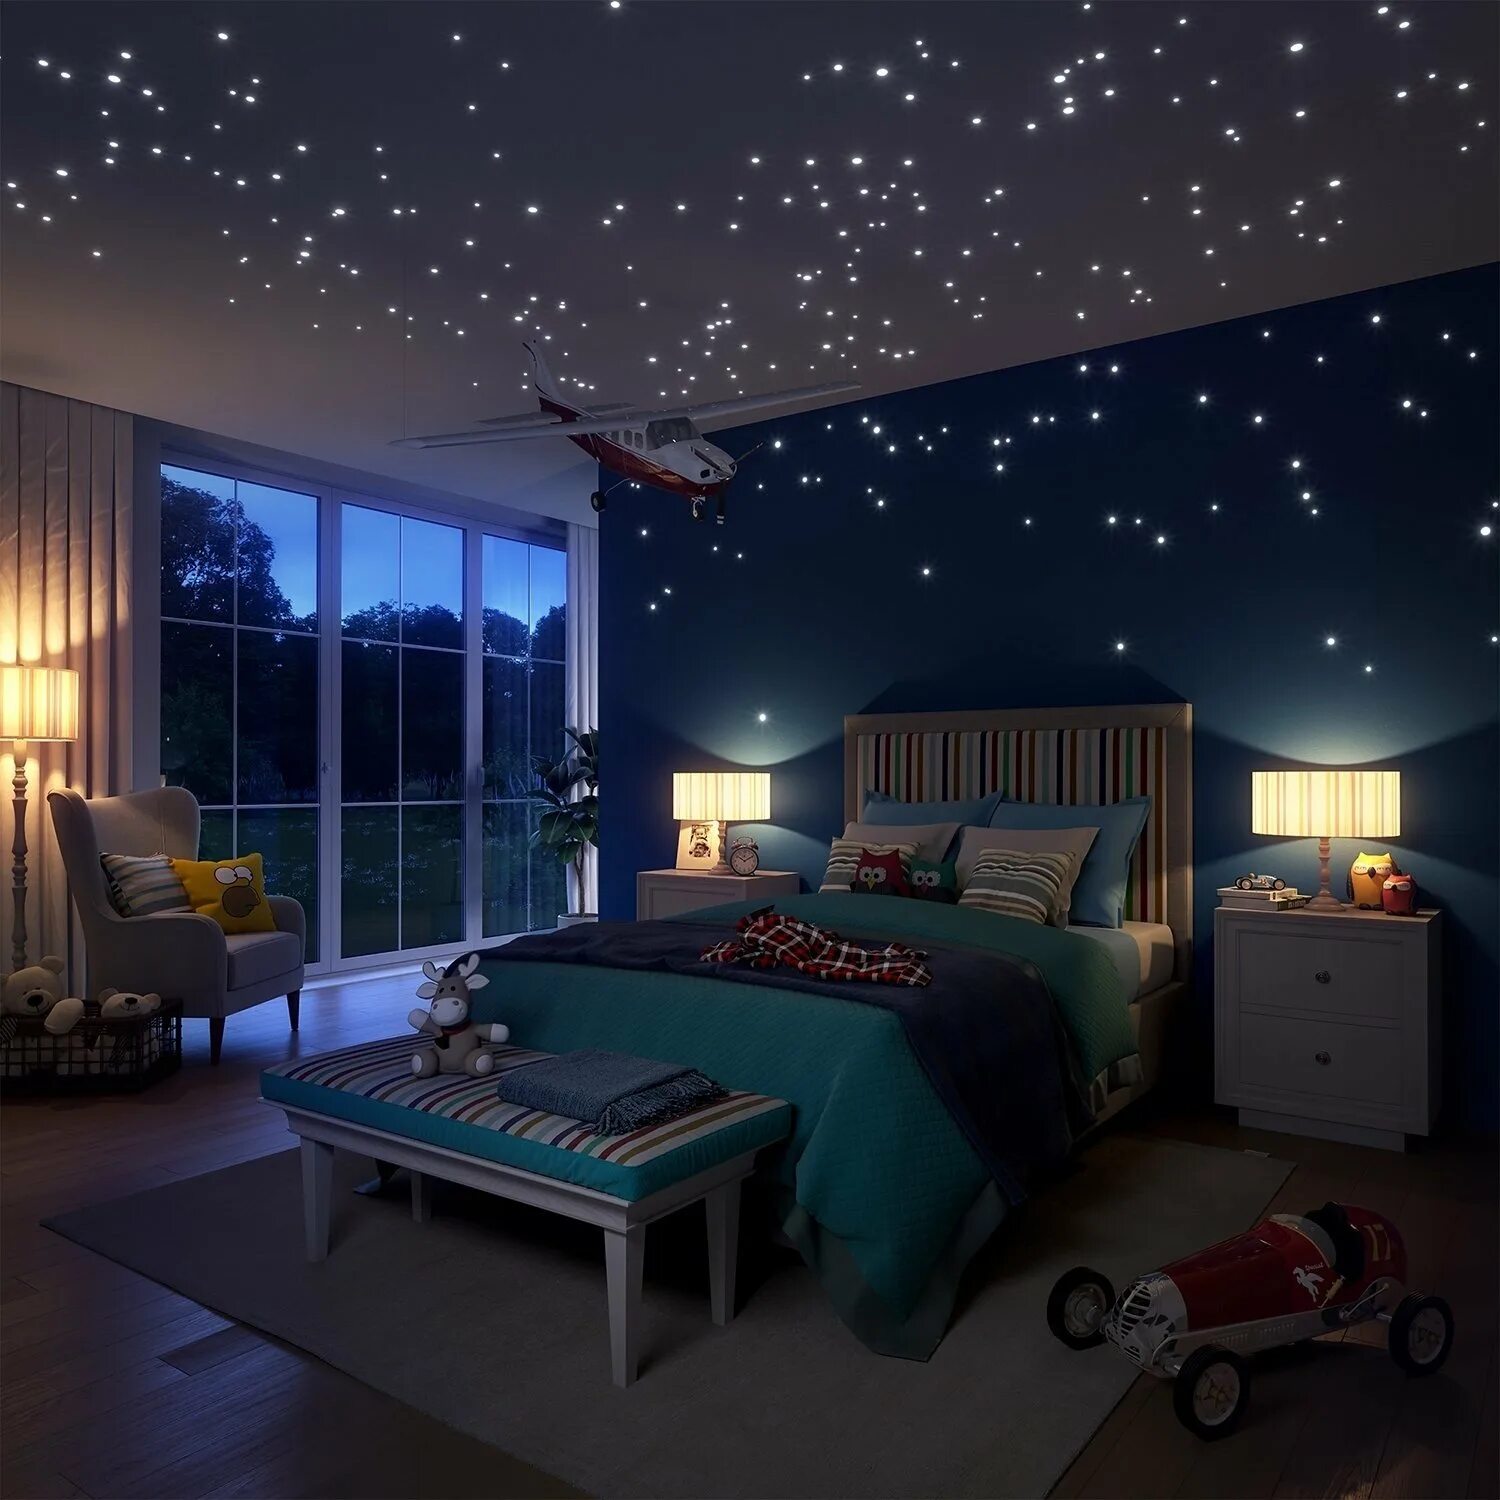 Комната в космическом стиле. Натяжной потолок звездное небо. Спальня в космическом стиле. Потолок со звездами.